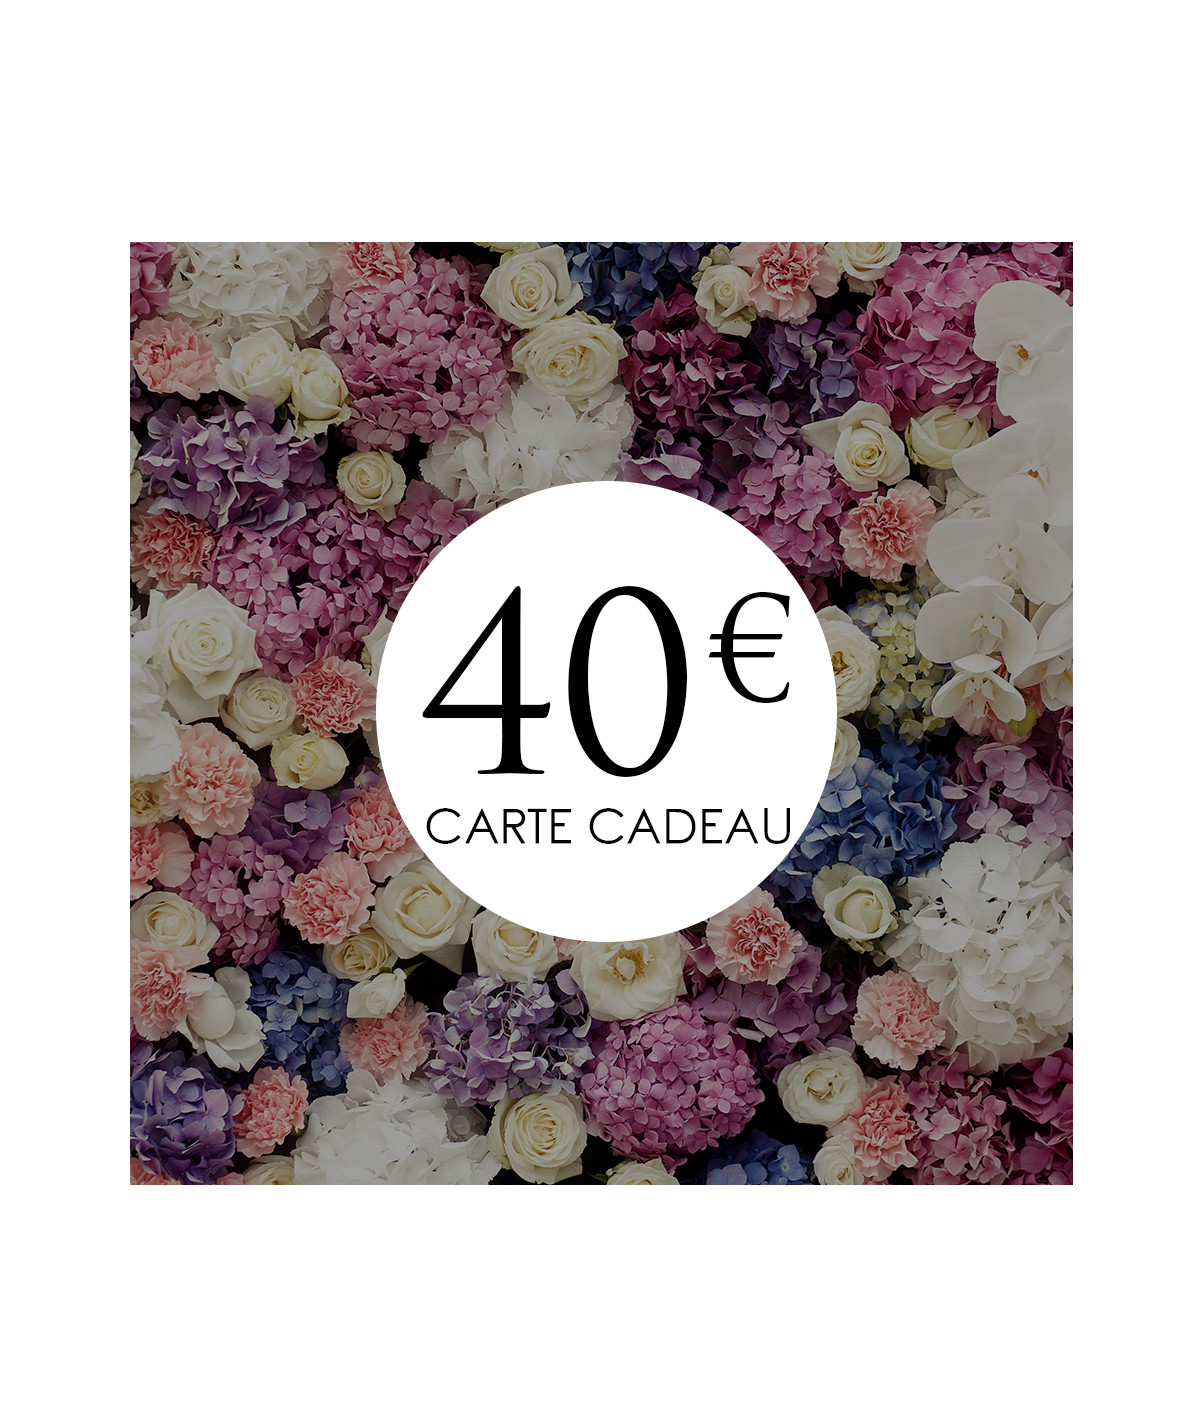 tarjeta regalo 40€ la boutique de lilie ideas regalo